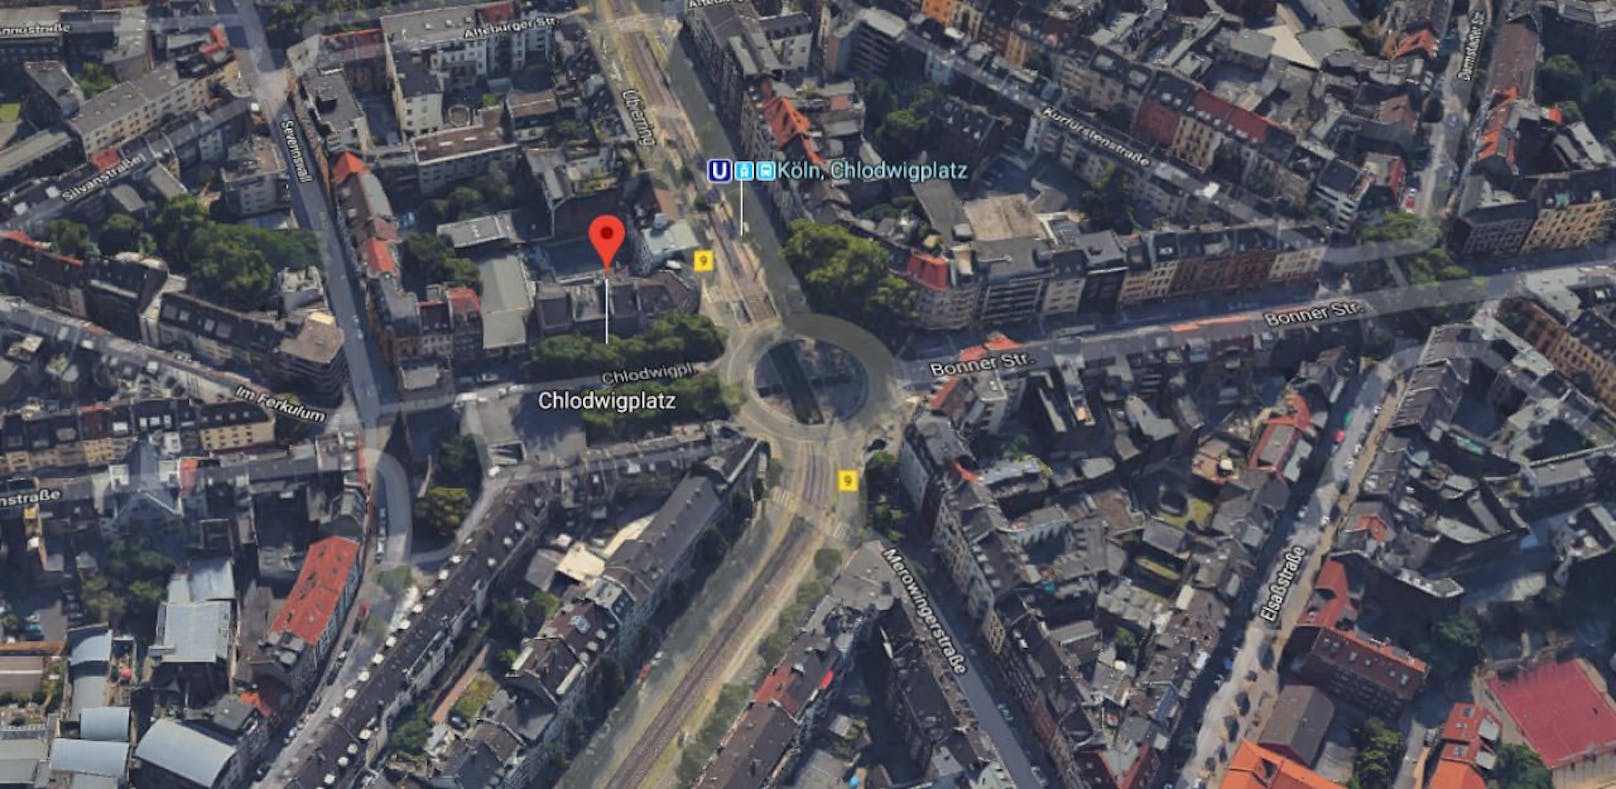 Der 44-Jährige hatte den Polizisten vor eine S-Bahn bei der Haltestelle Chlodwigplatz geschubst